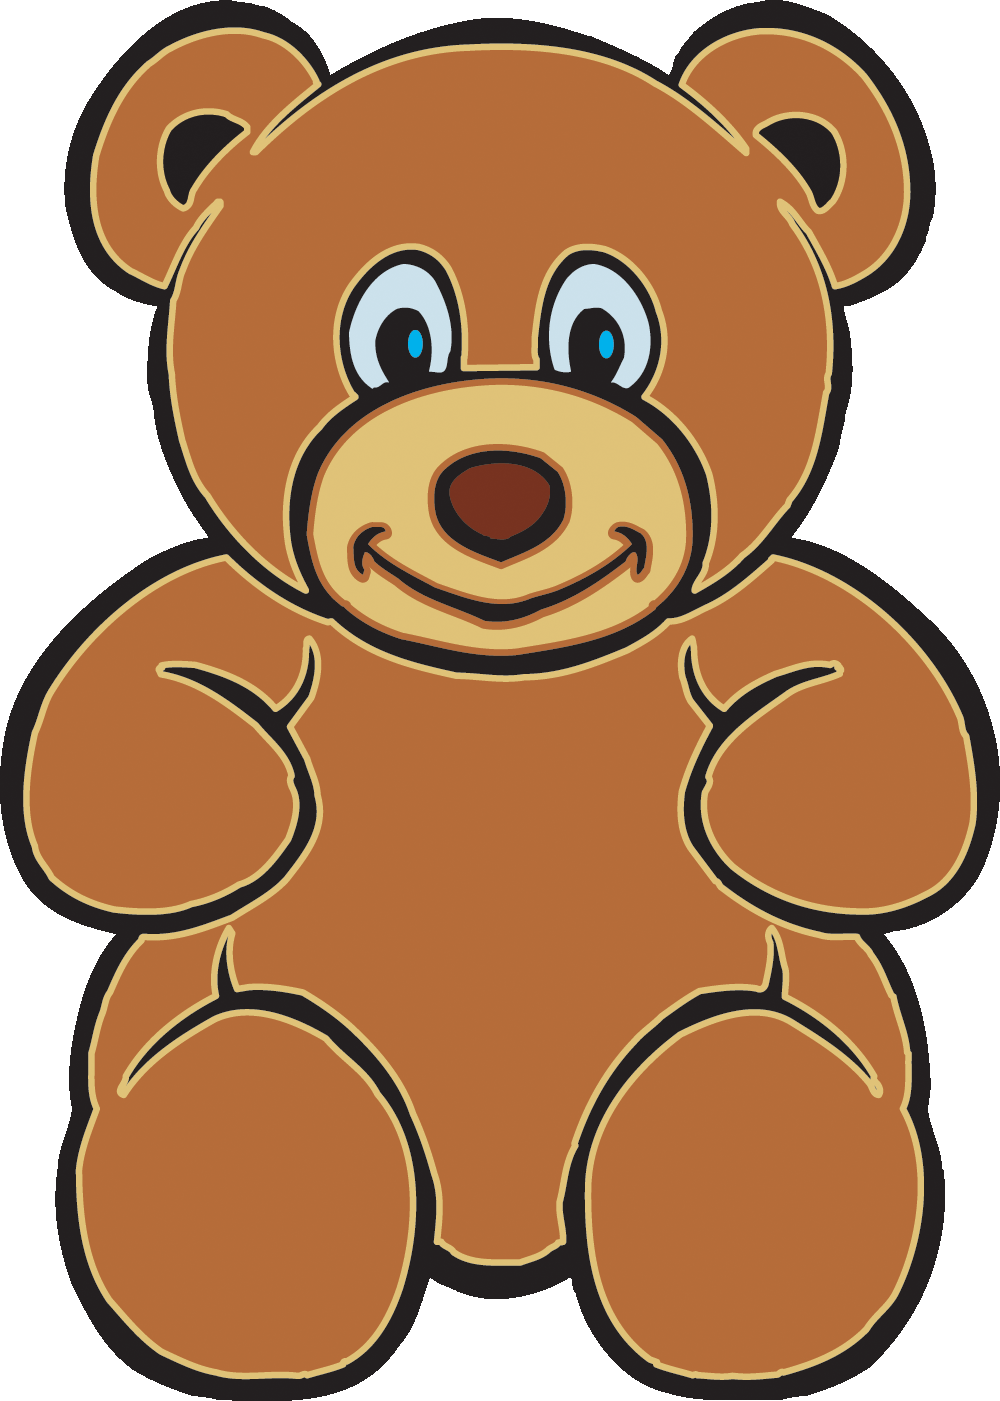 animated teddy bear clip art - photo #3